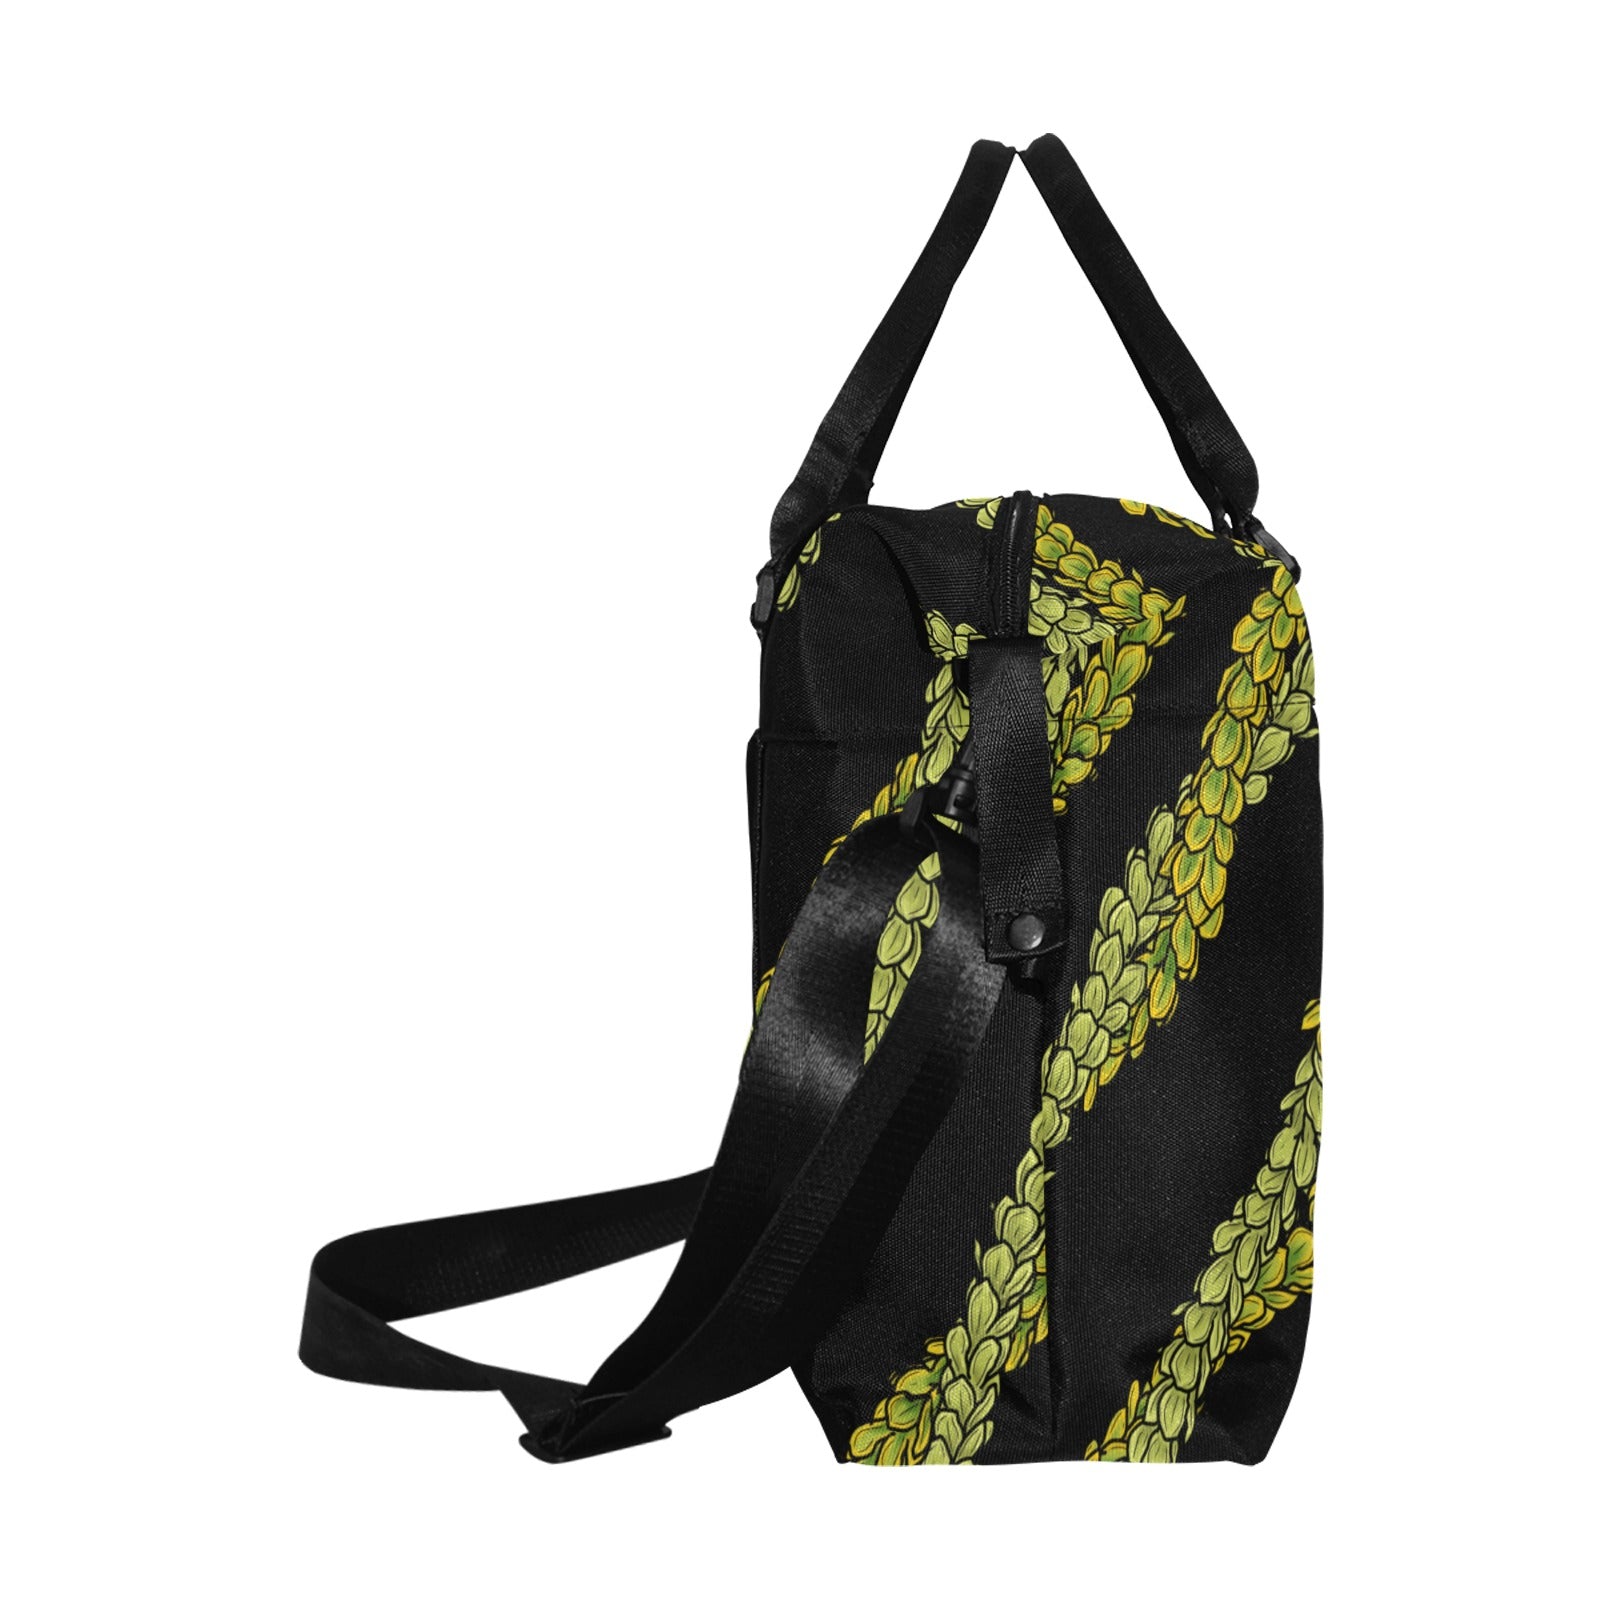 Pakalana Lei Hawaiian Print Design Travel Duffle Bag Large Capacity